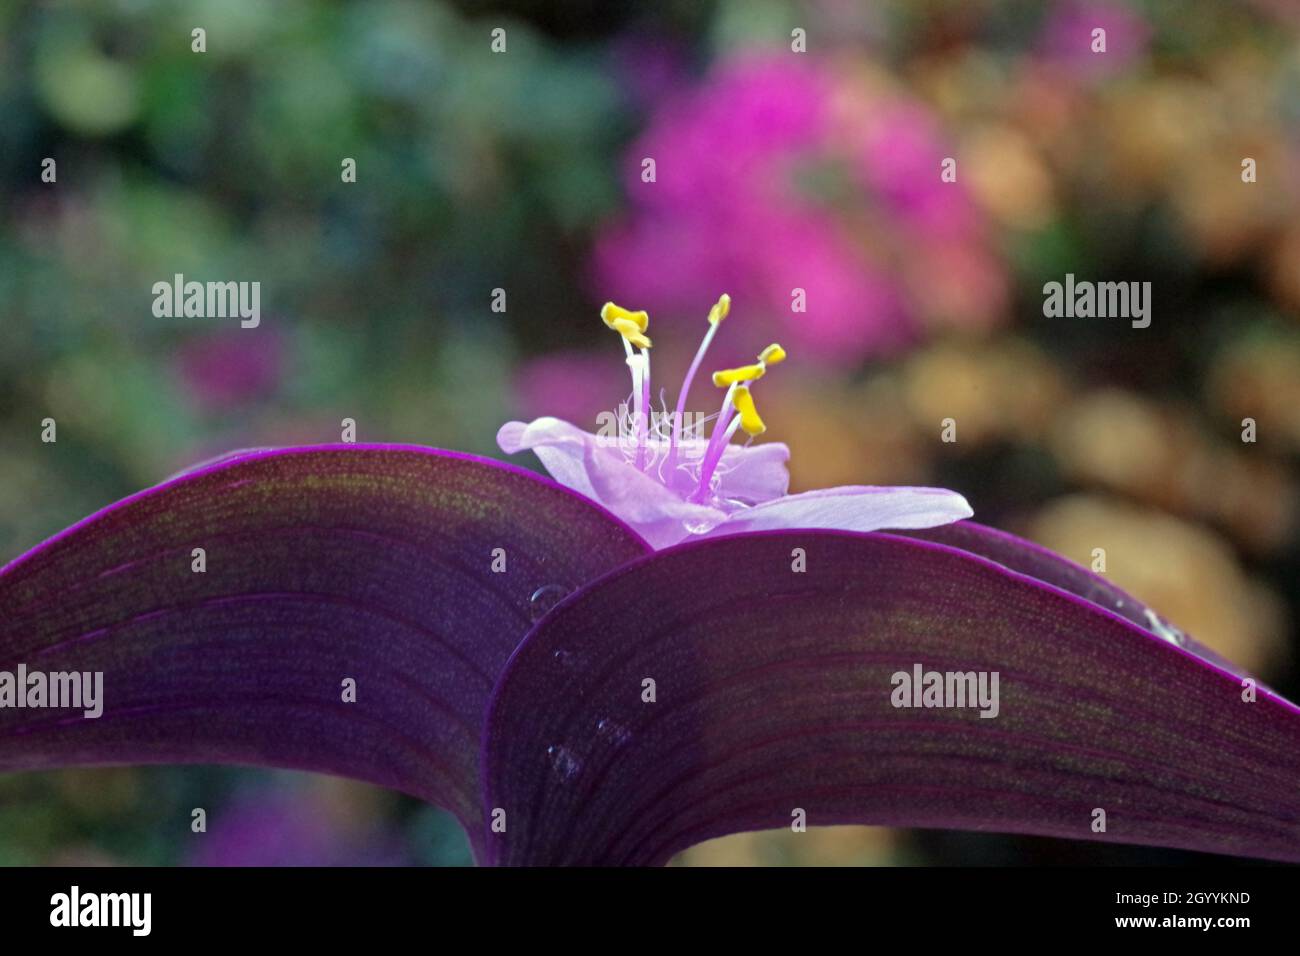 Primer plano del corazón morado (setcreasea purpurea) Foto de stock